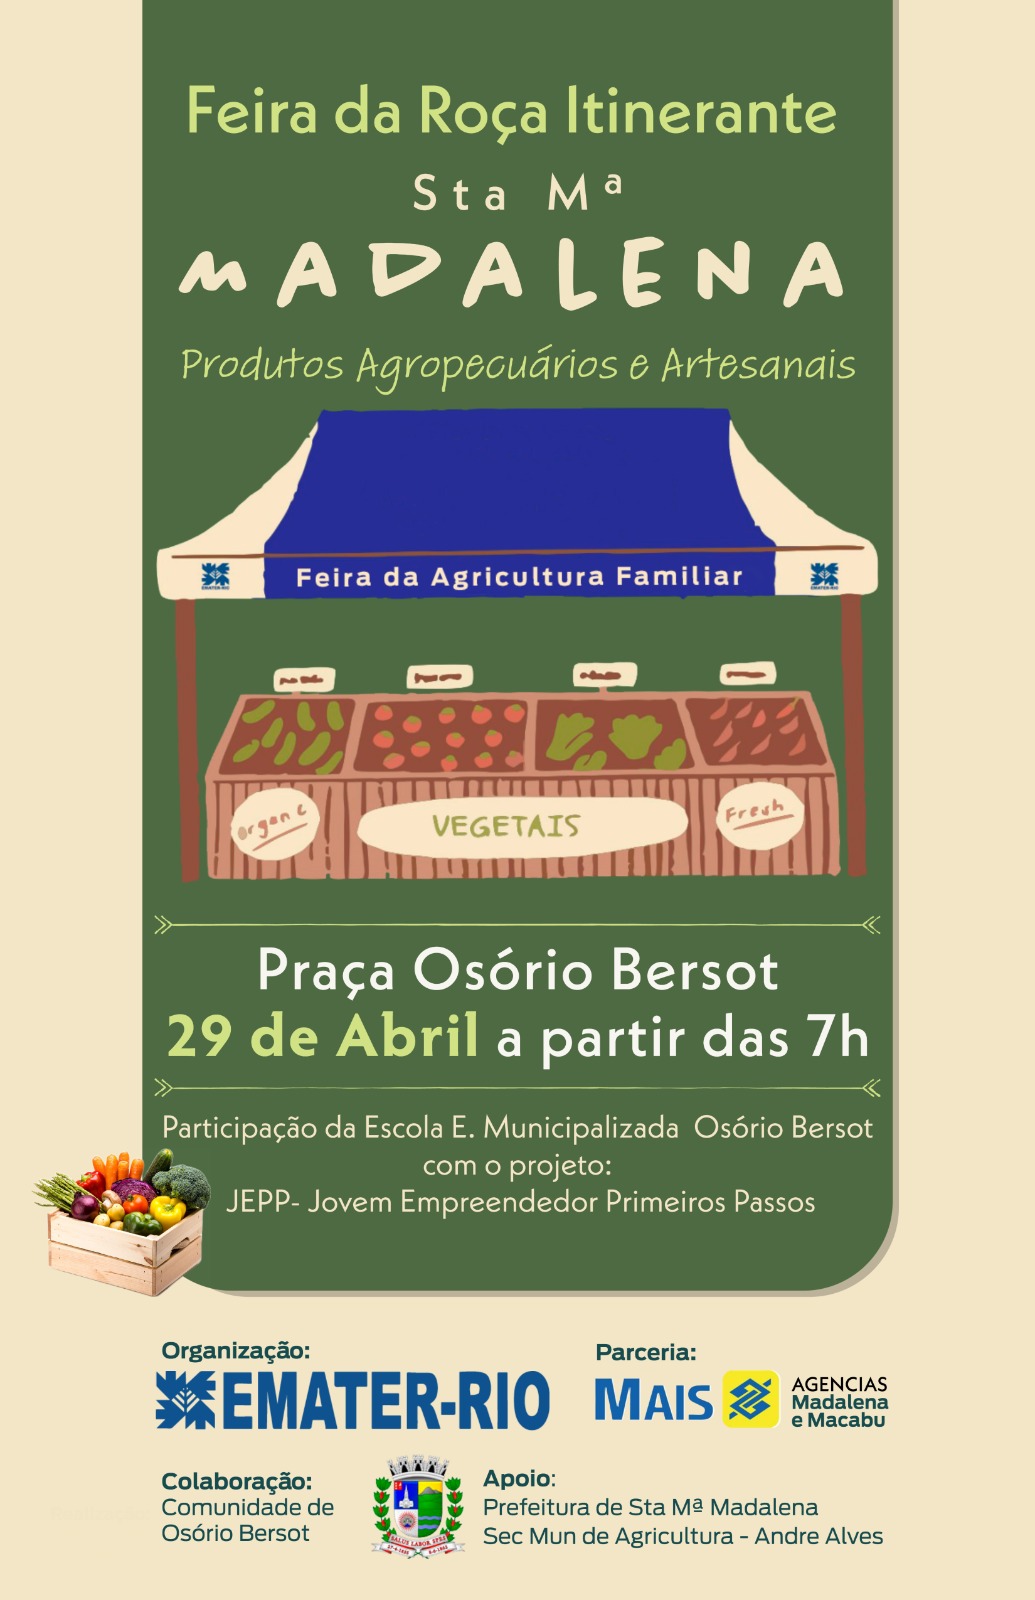 Feira da Roça Itinerante acontece neste sábado na Praça de Osório Bersort